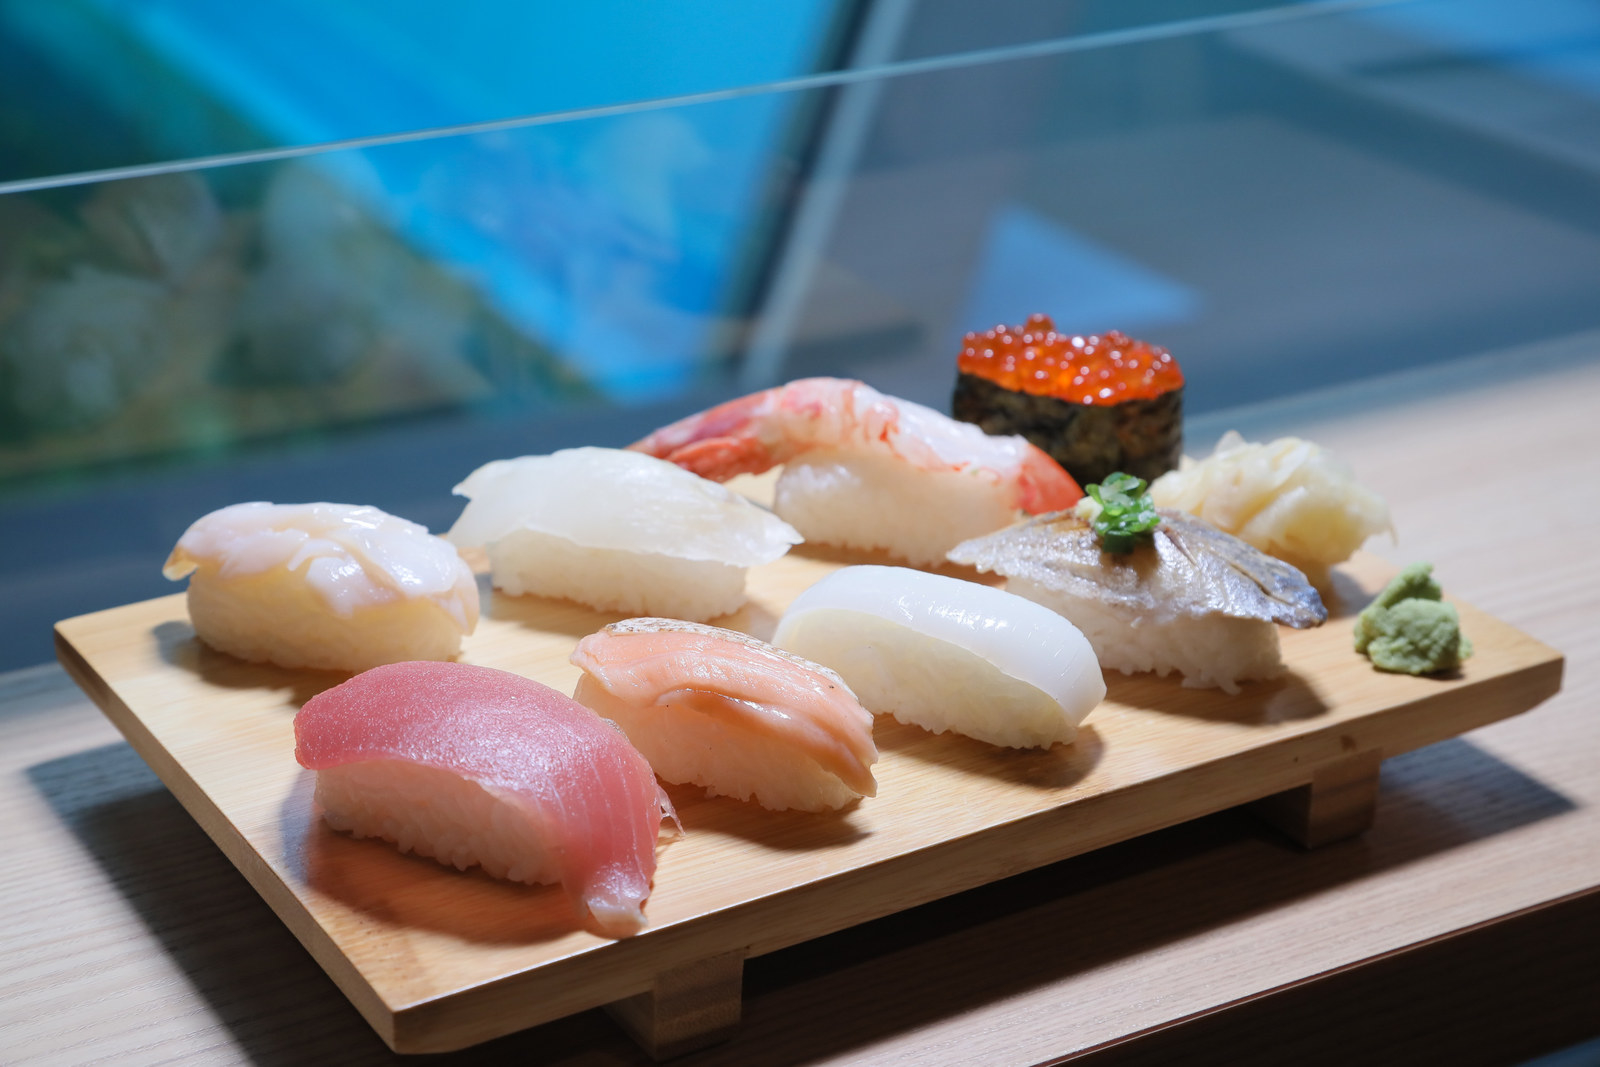 魚を見ながら寿司を食べる アクアマリンふくしまの食育がすごい